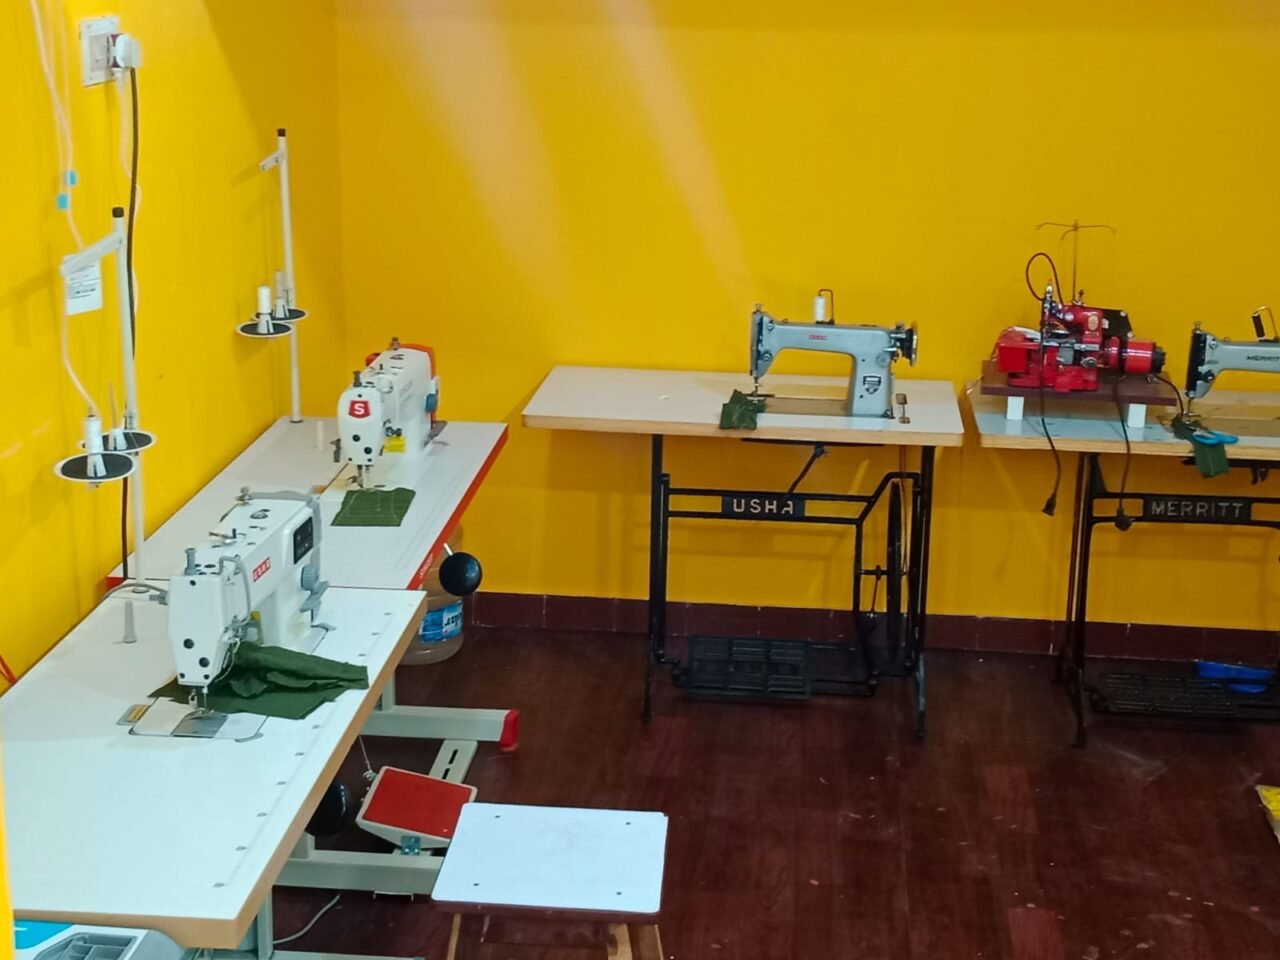 merritt sewing machine price list in chennai